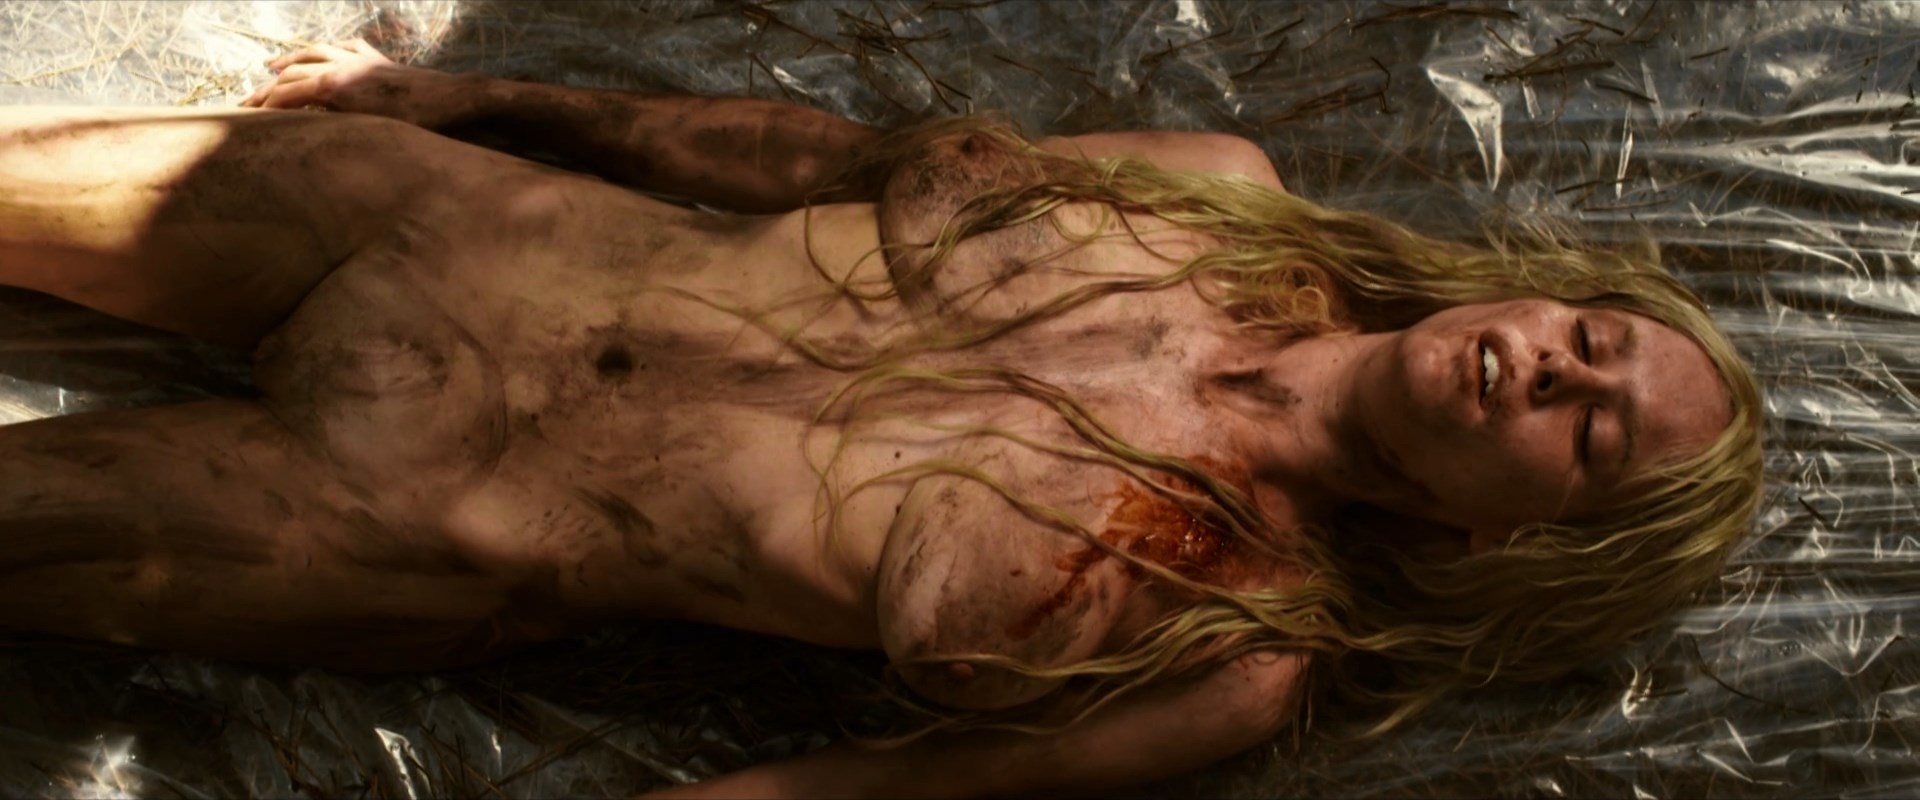 Maria Forque nude - Into the Mud (2016)